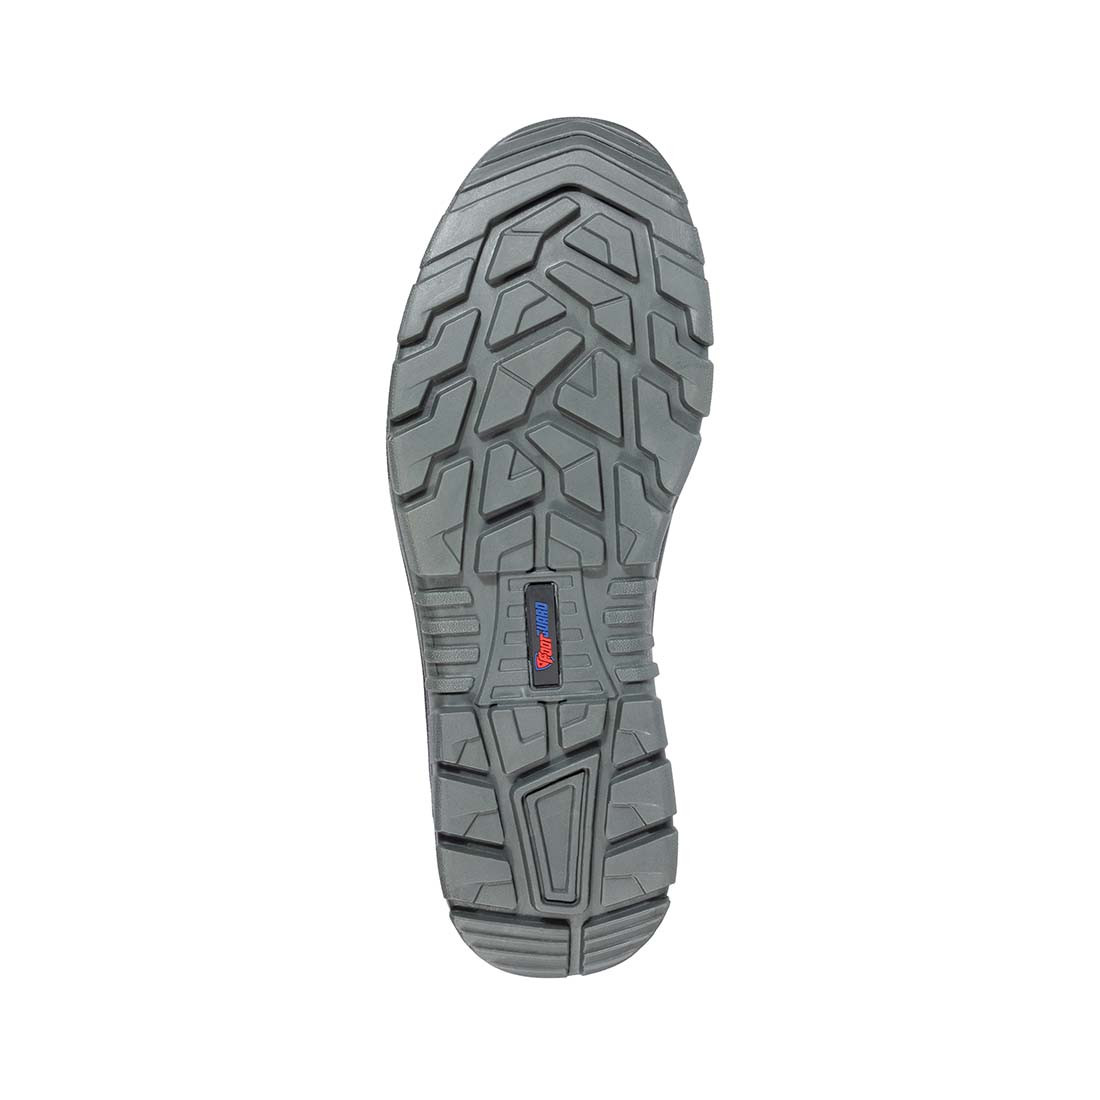 Pantofi de protectie S3 SAFE LOW - Incaltaminte de protectie | Bocanci, Pantofi, Sandale, Cizme